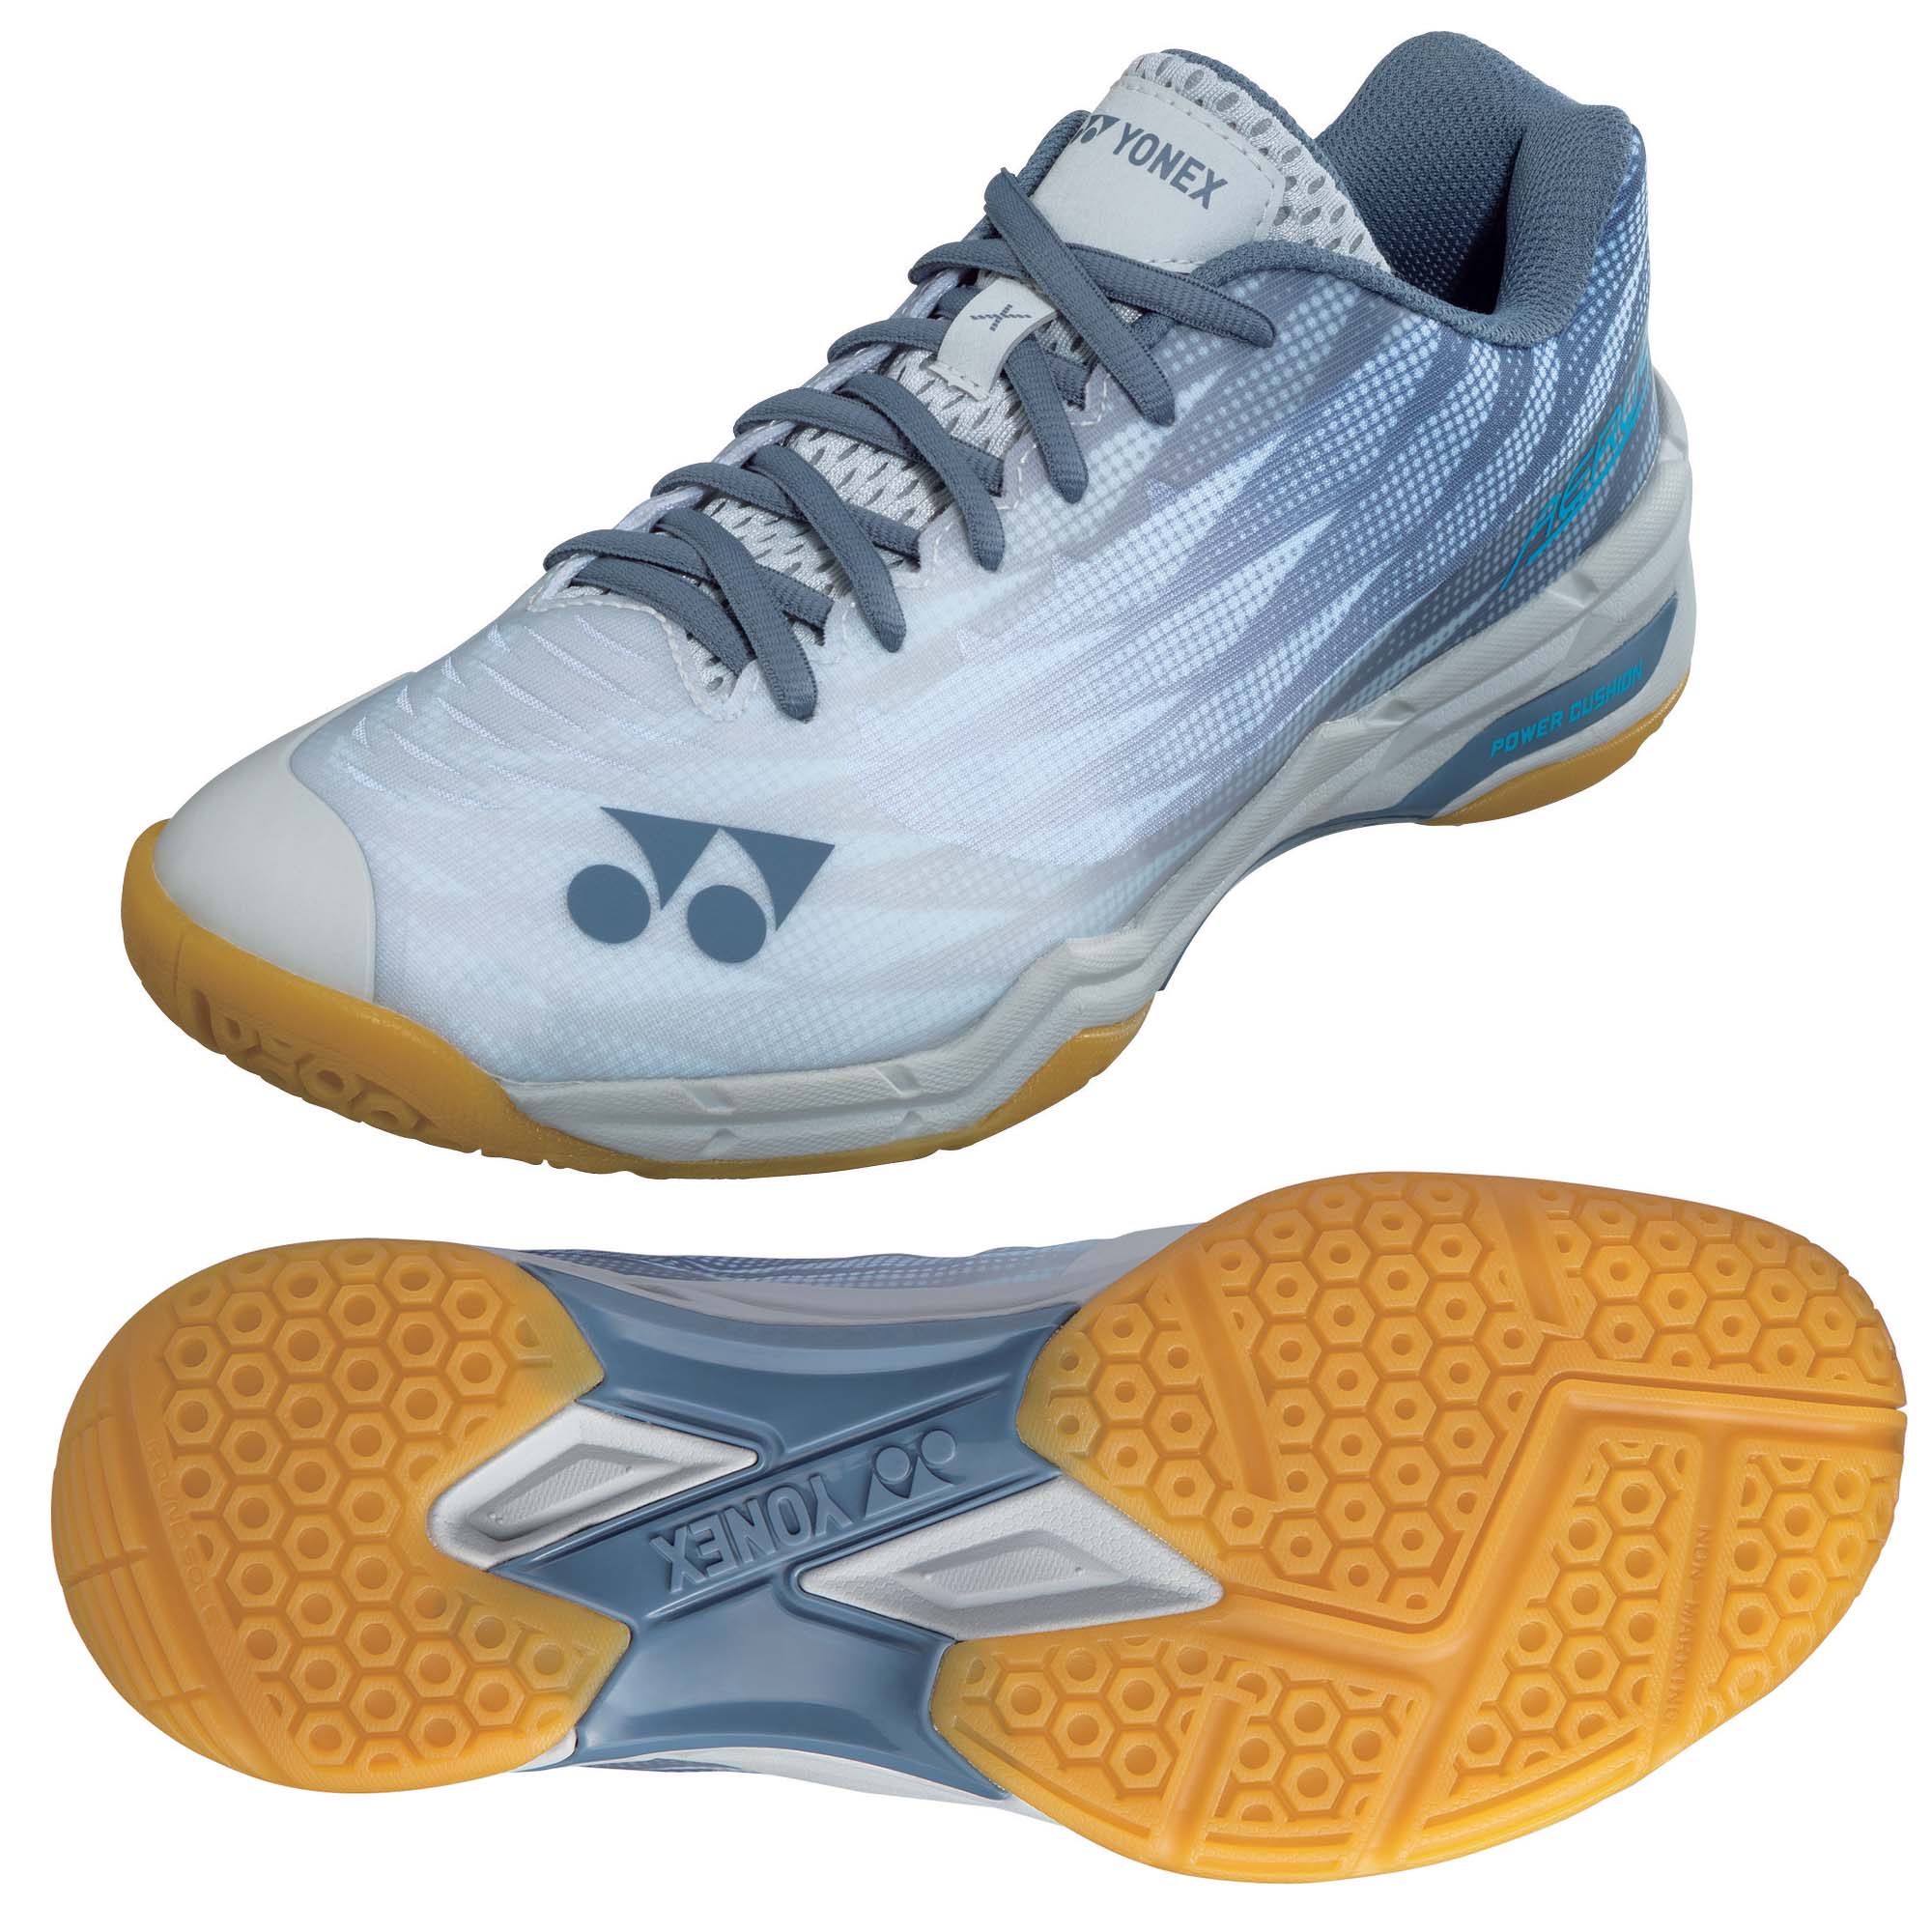 Yonex Aerus X2 Badminton Shoes